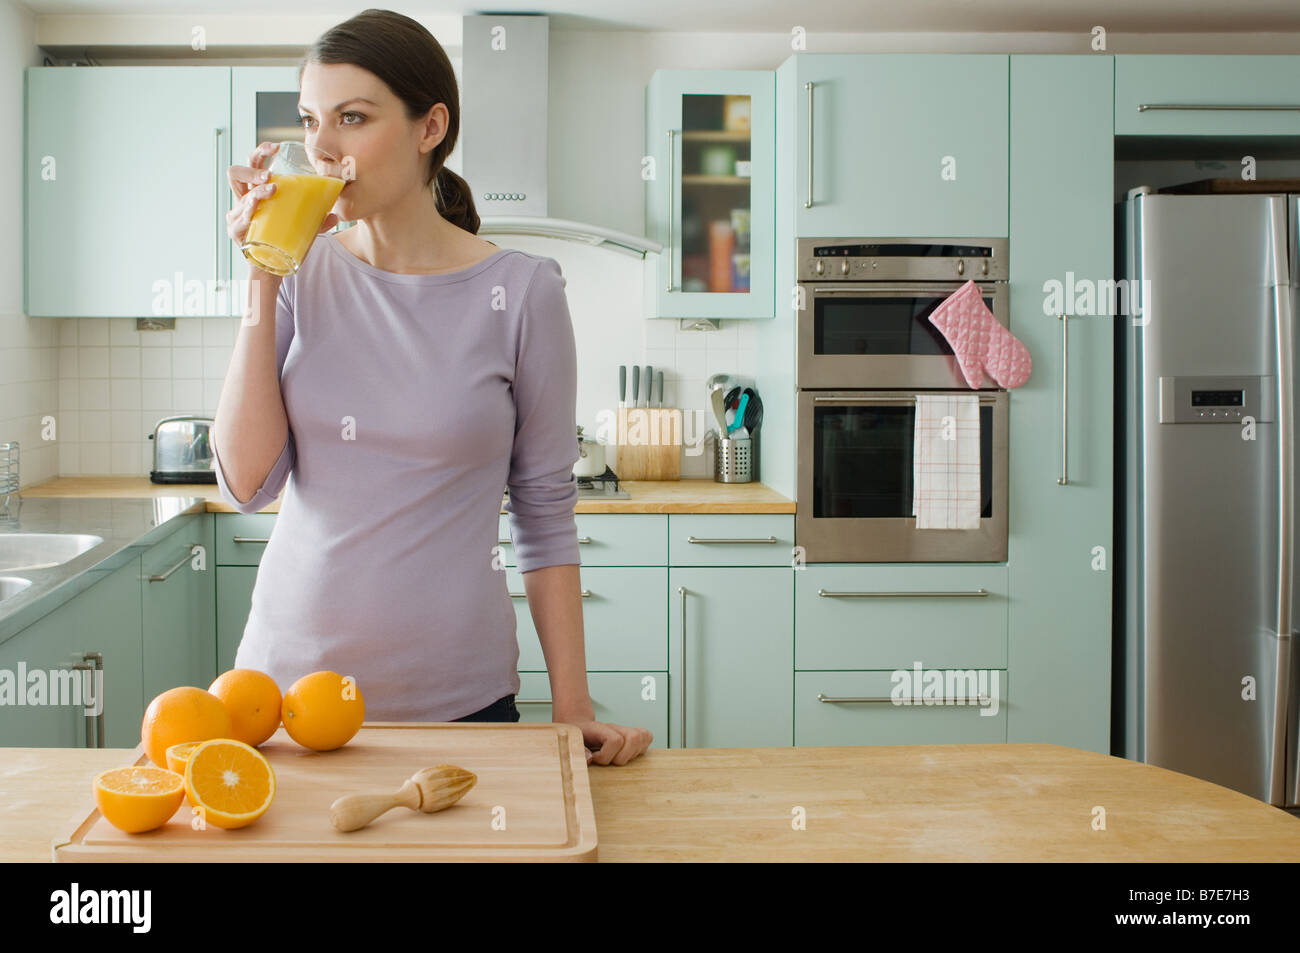 Woman with orange juice Stock Photo